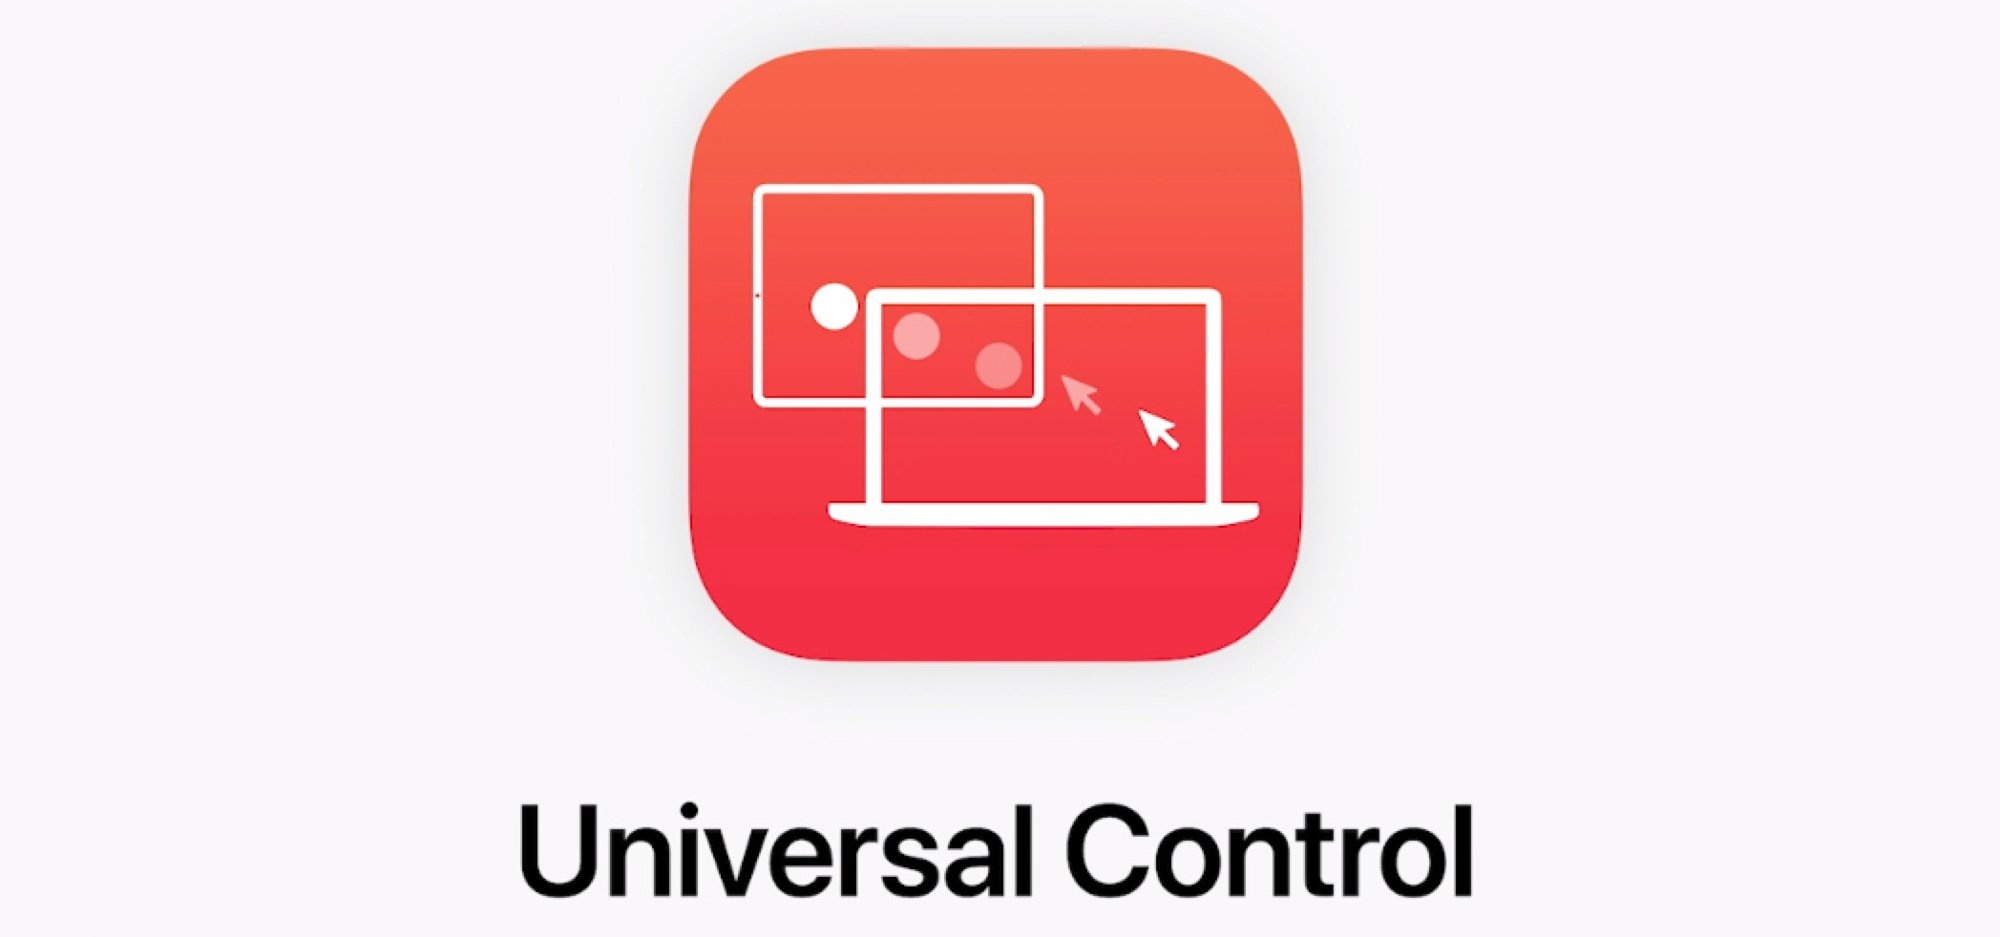 Universal Control là gì? Sử dụng 1 bàn phím và chuột điều khiển cả Mac và iPad